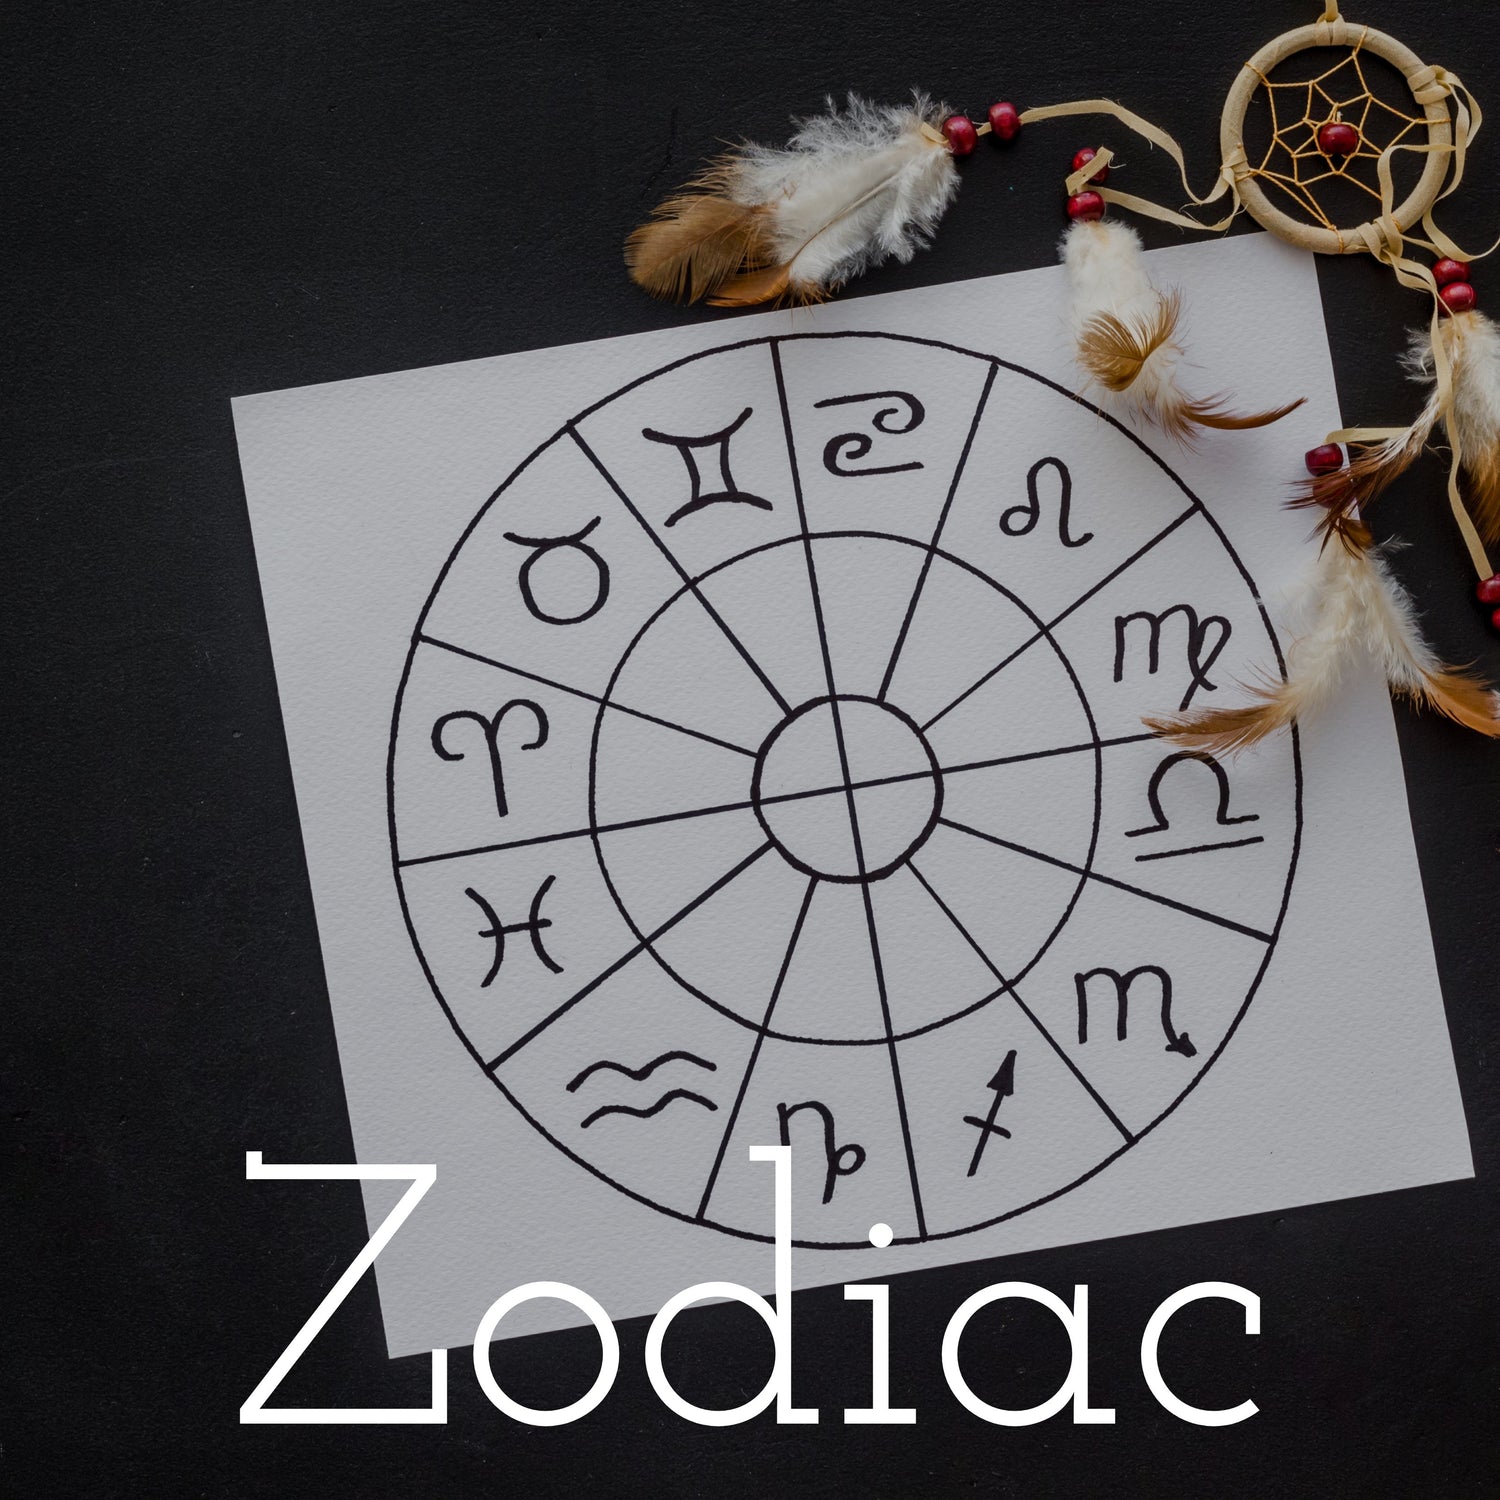 Zodiac Collection